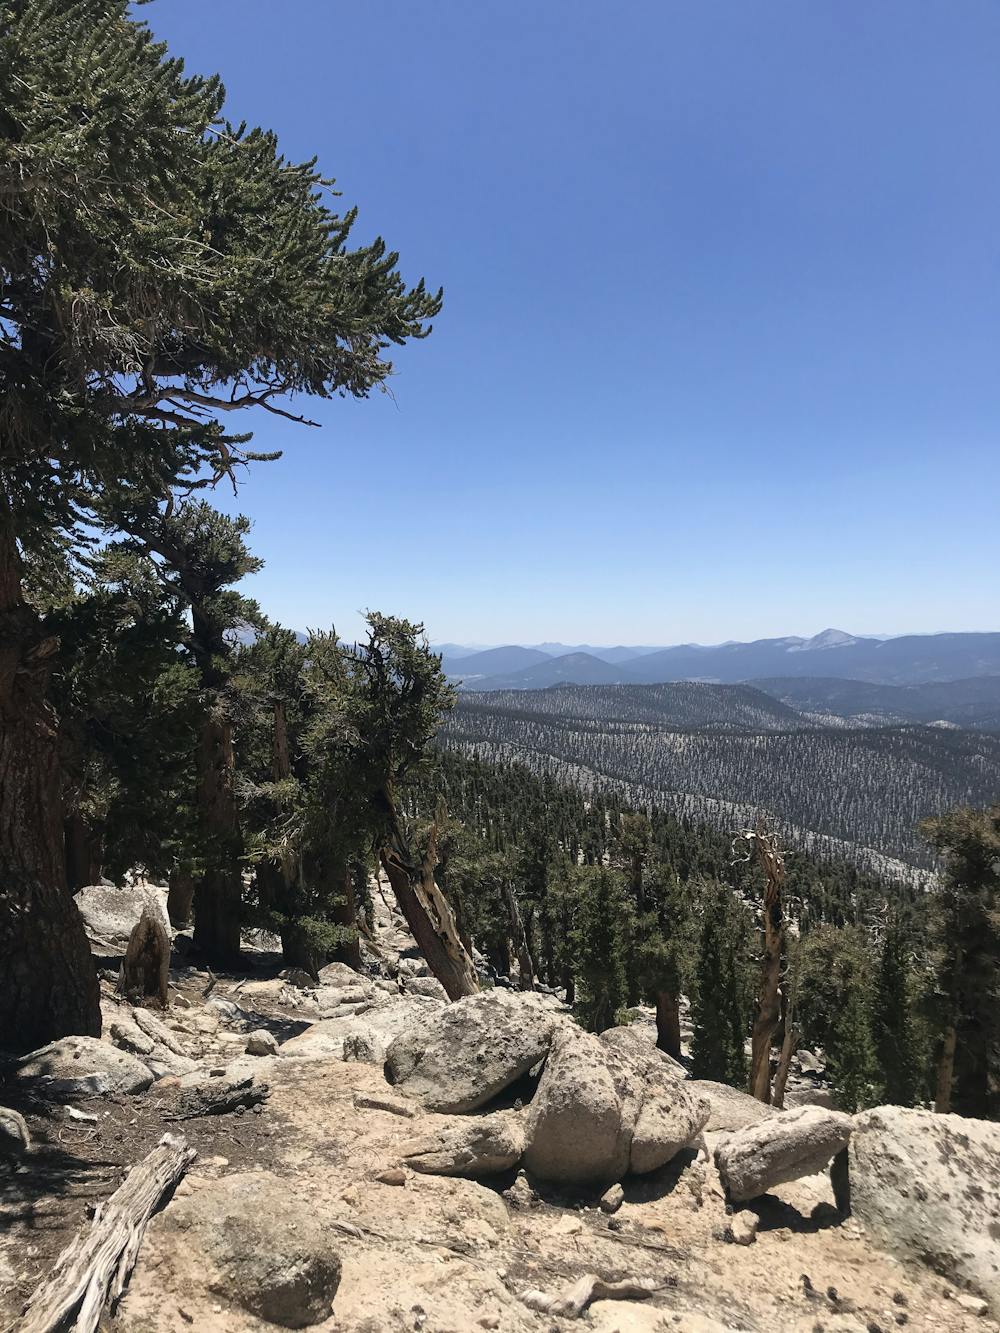 Pines in the Sierra Nevada